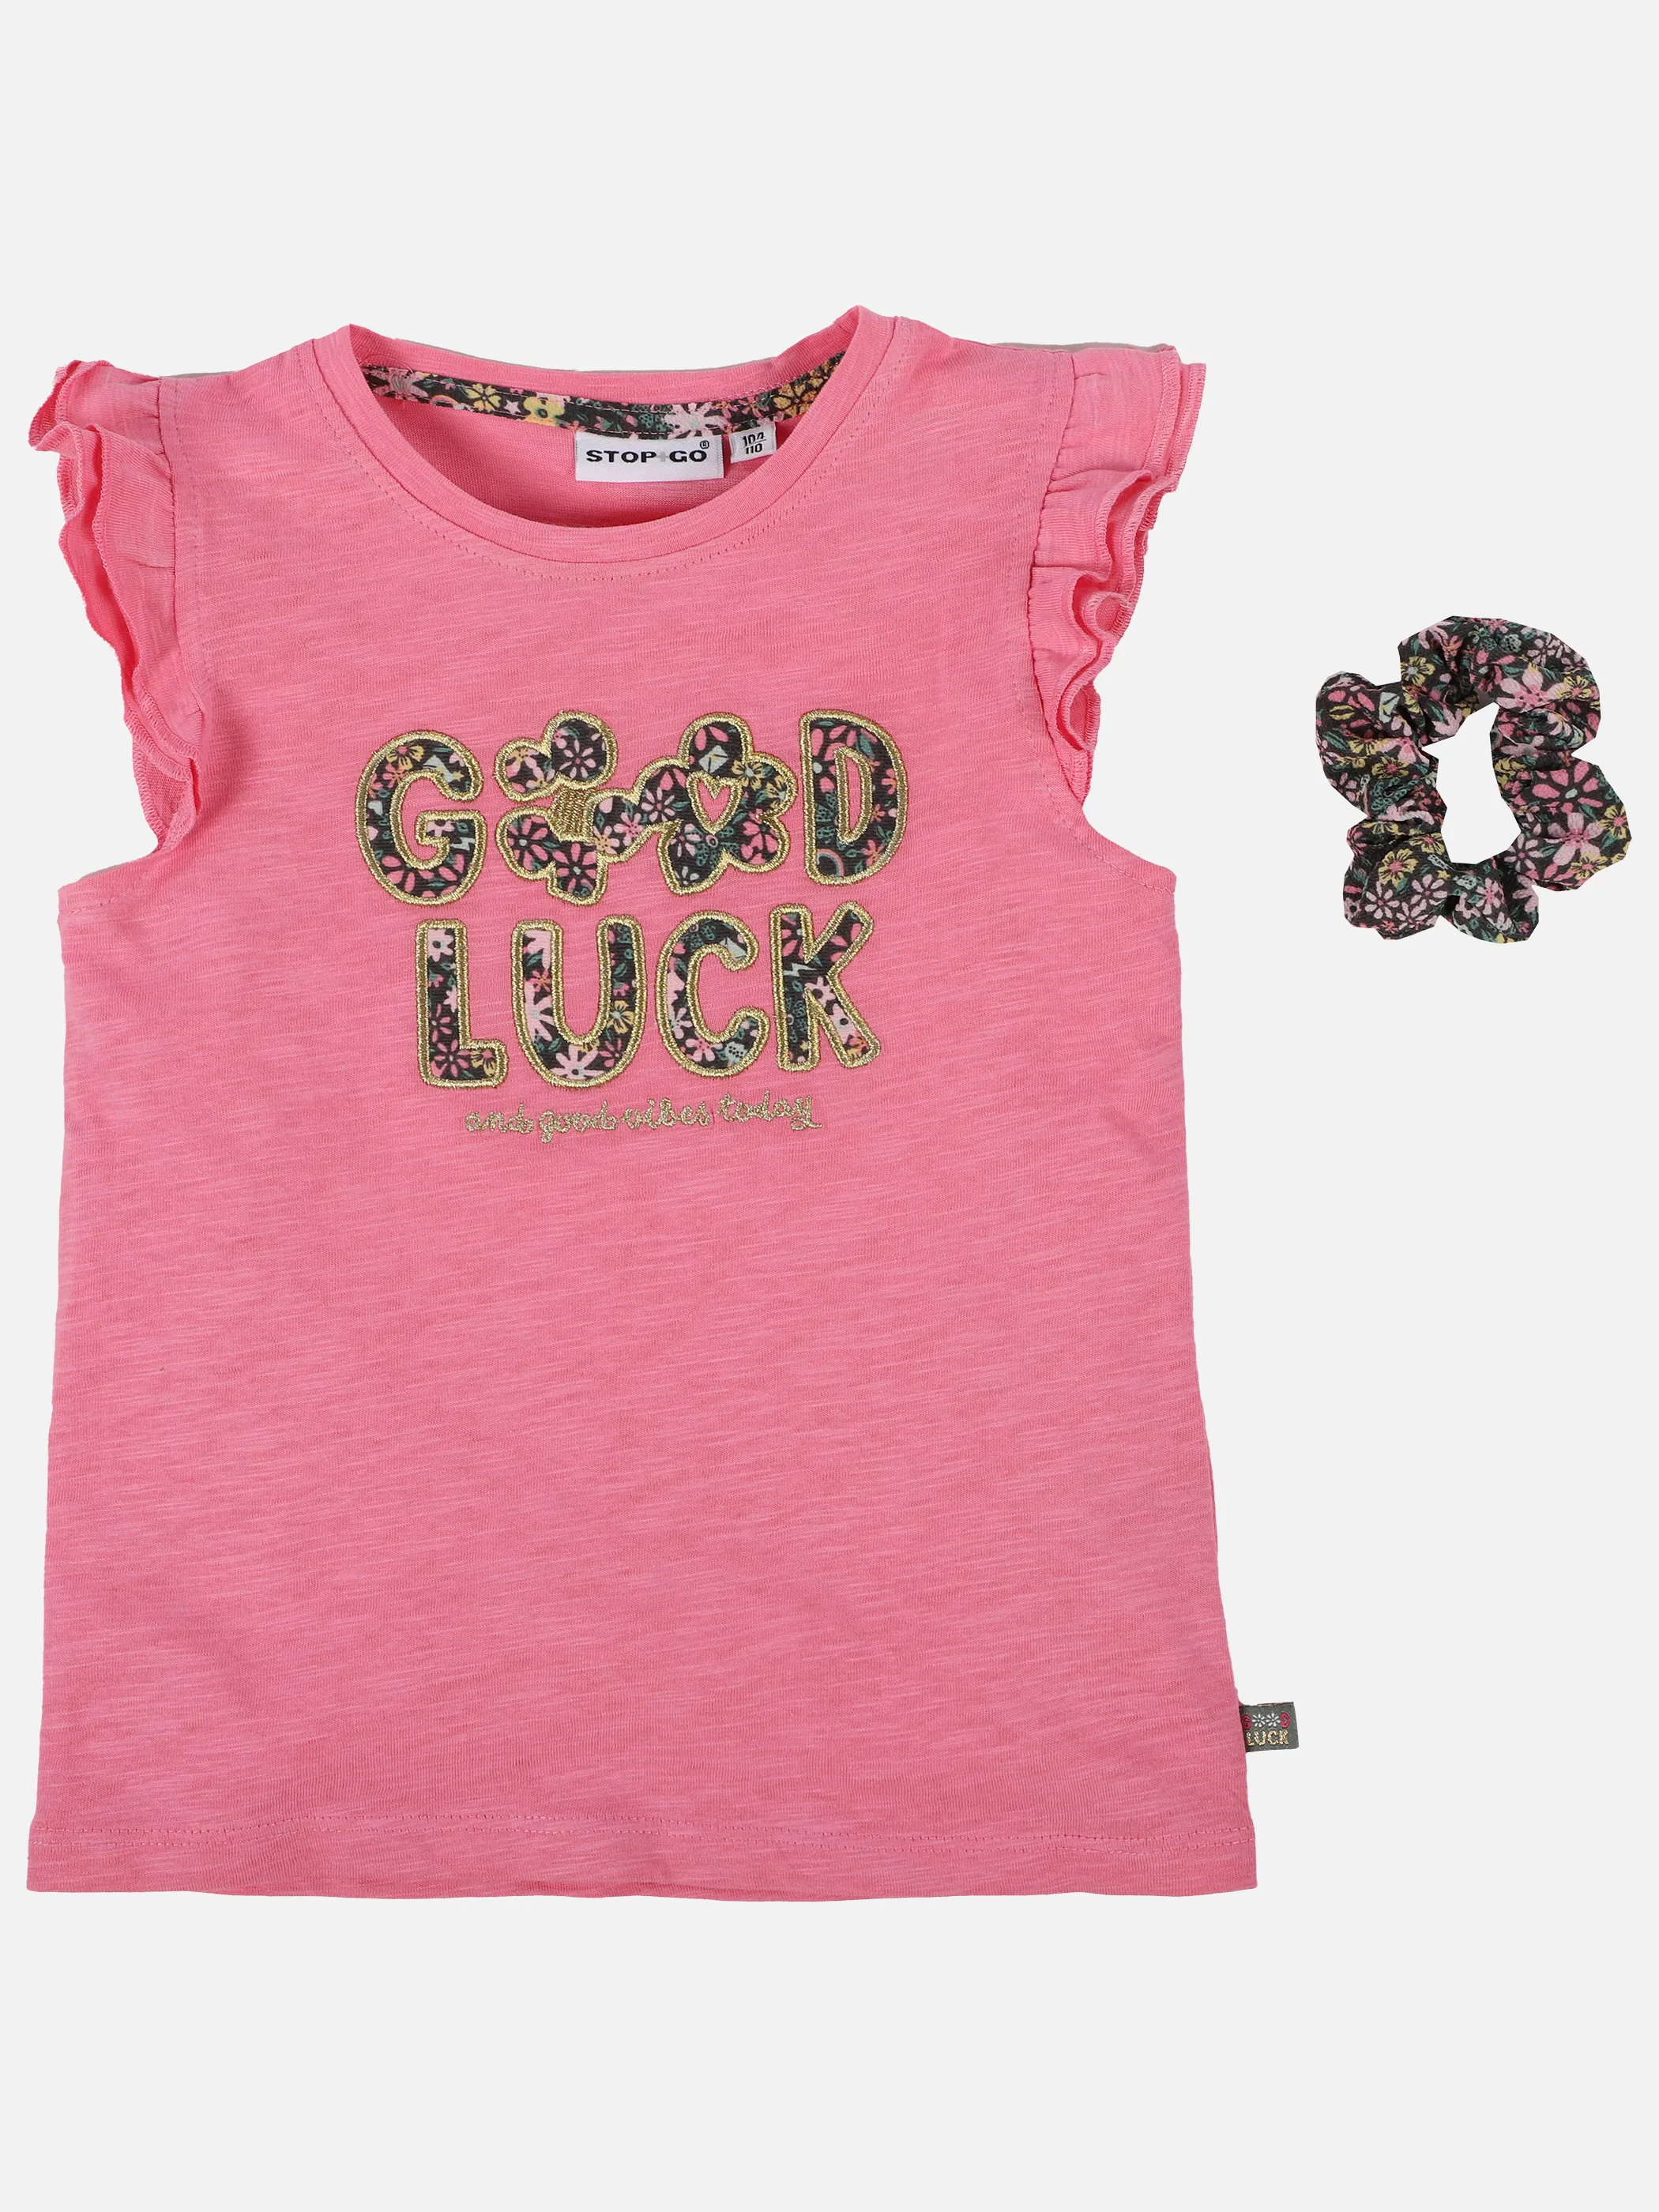 Stop + Go KM T-Shirt mit Stickerei in pink Pink 891524 PINK 1